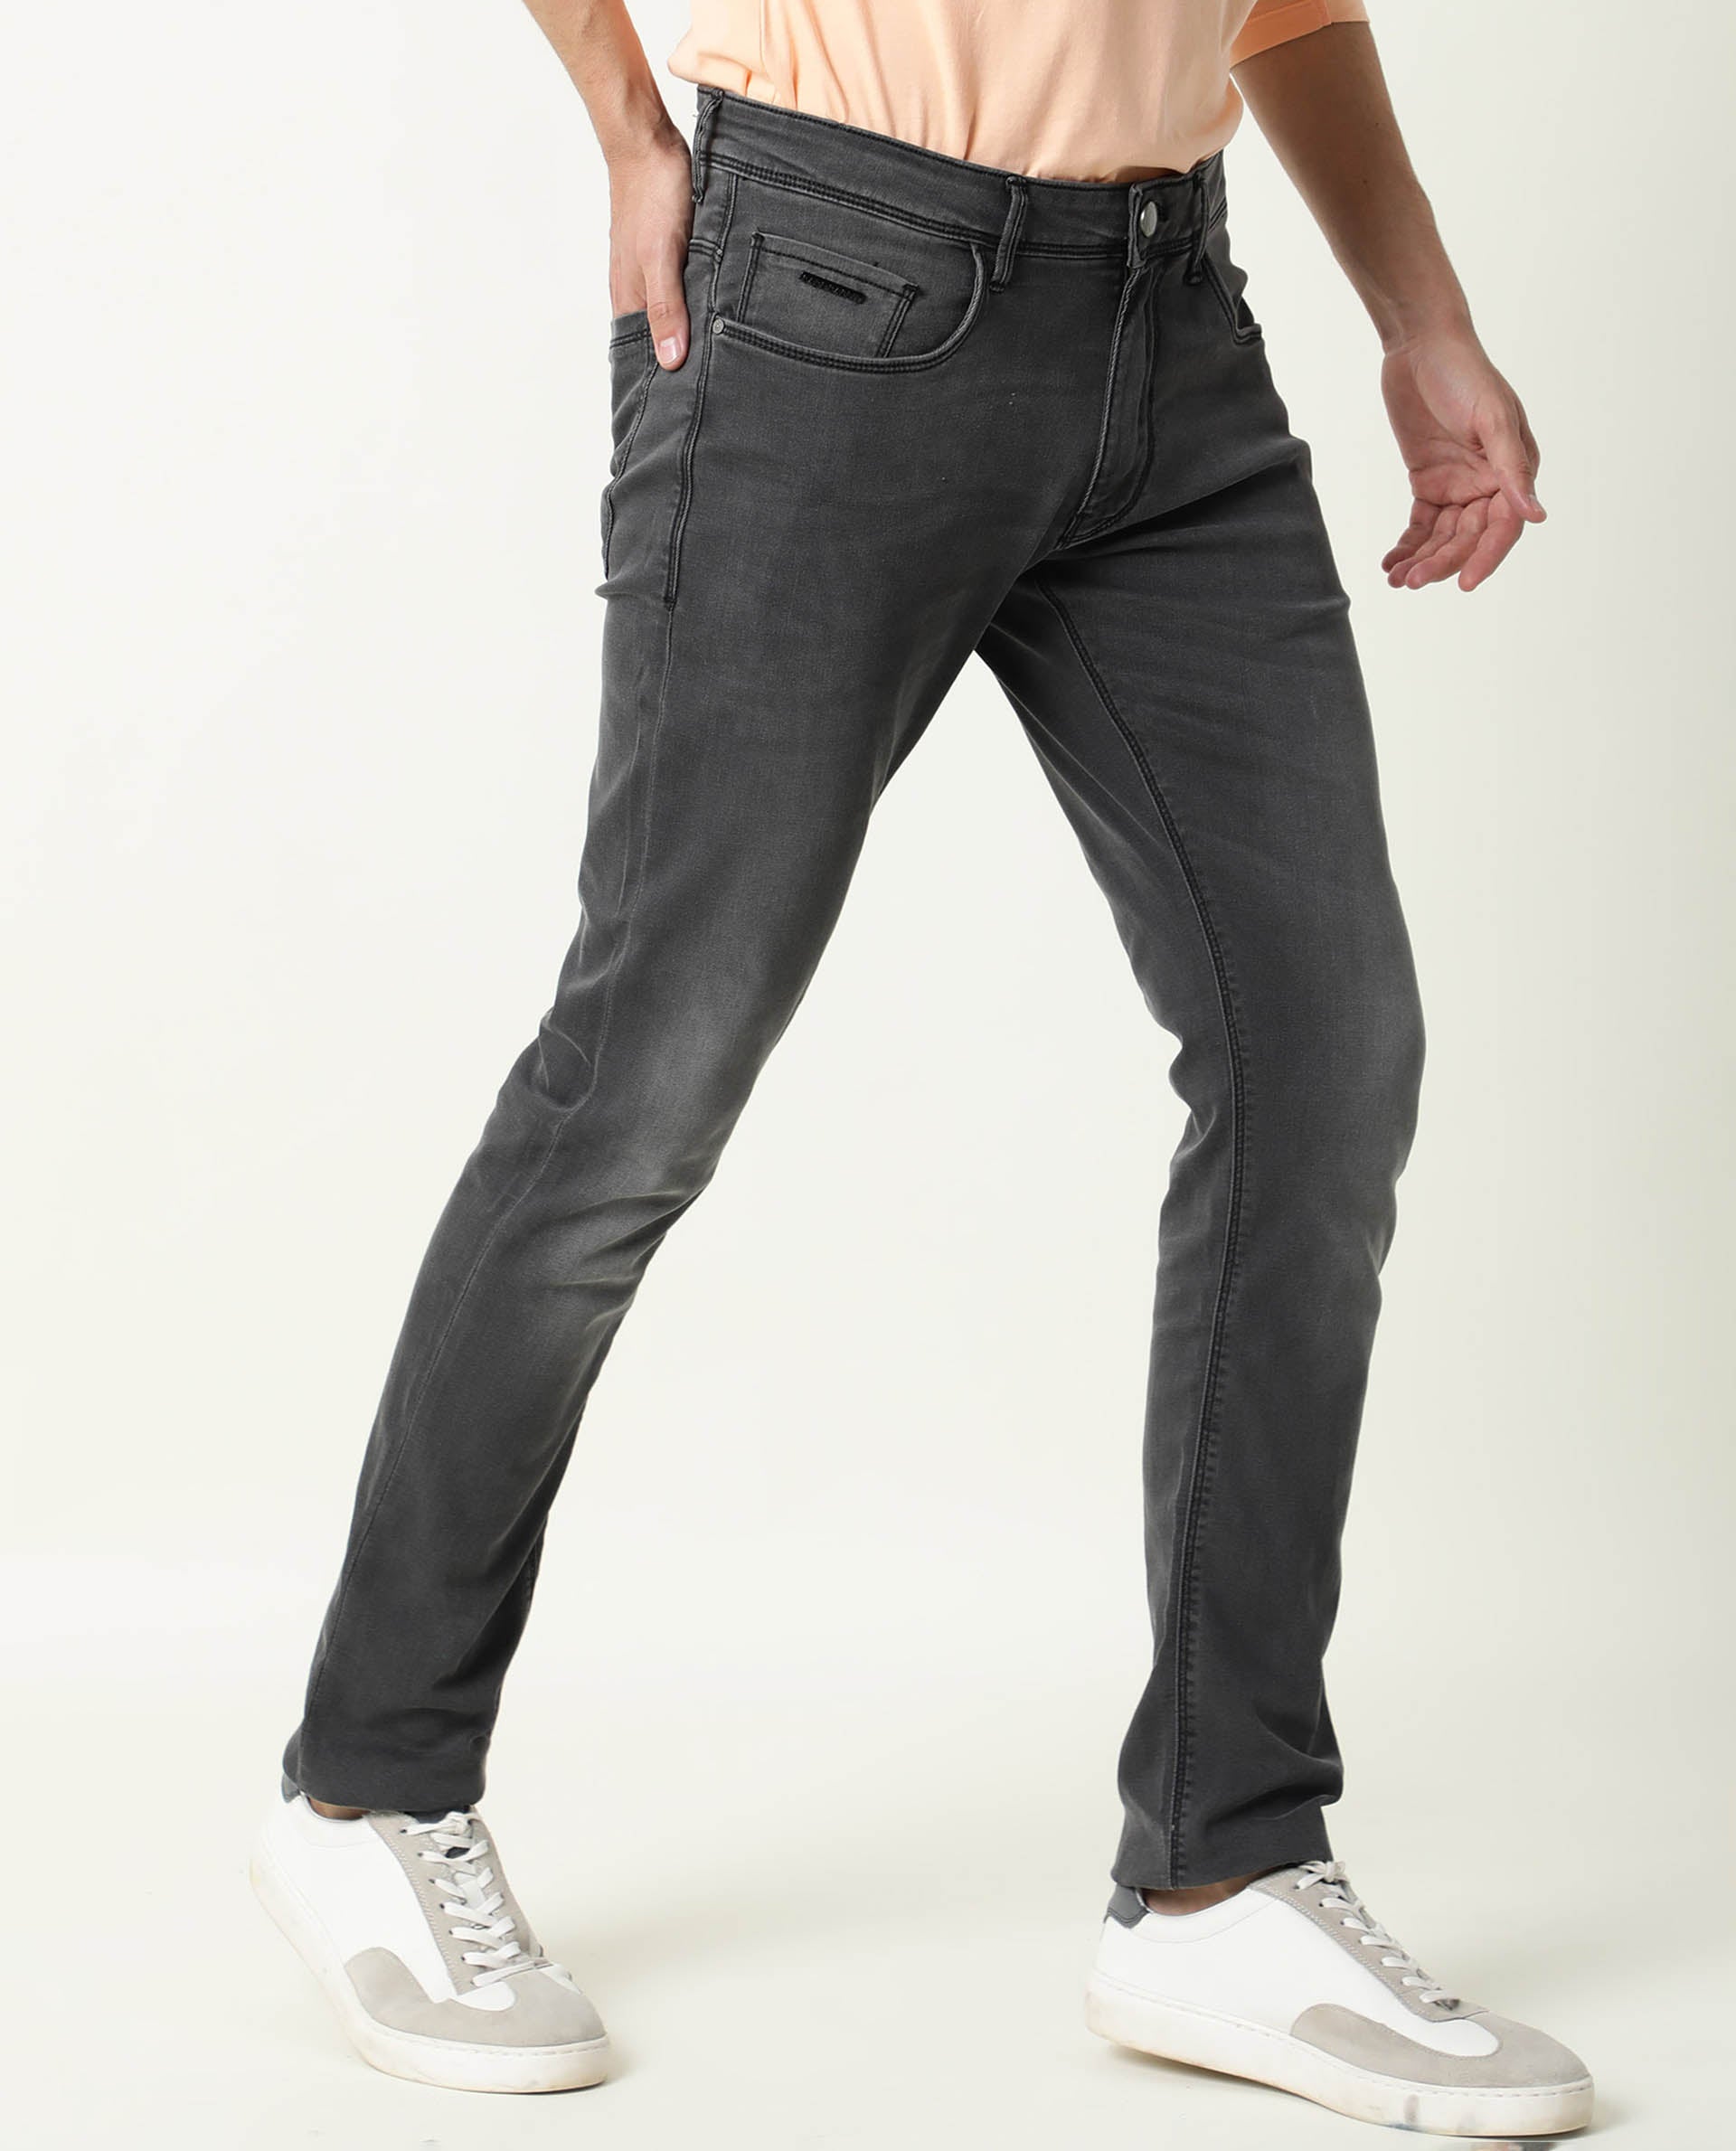 Details 190+ regular jeans mens super hot